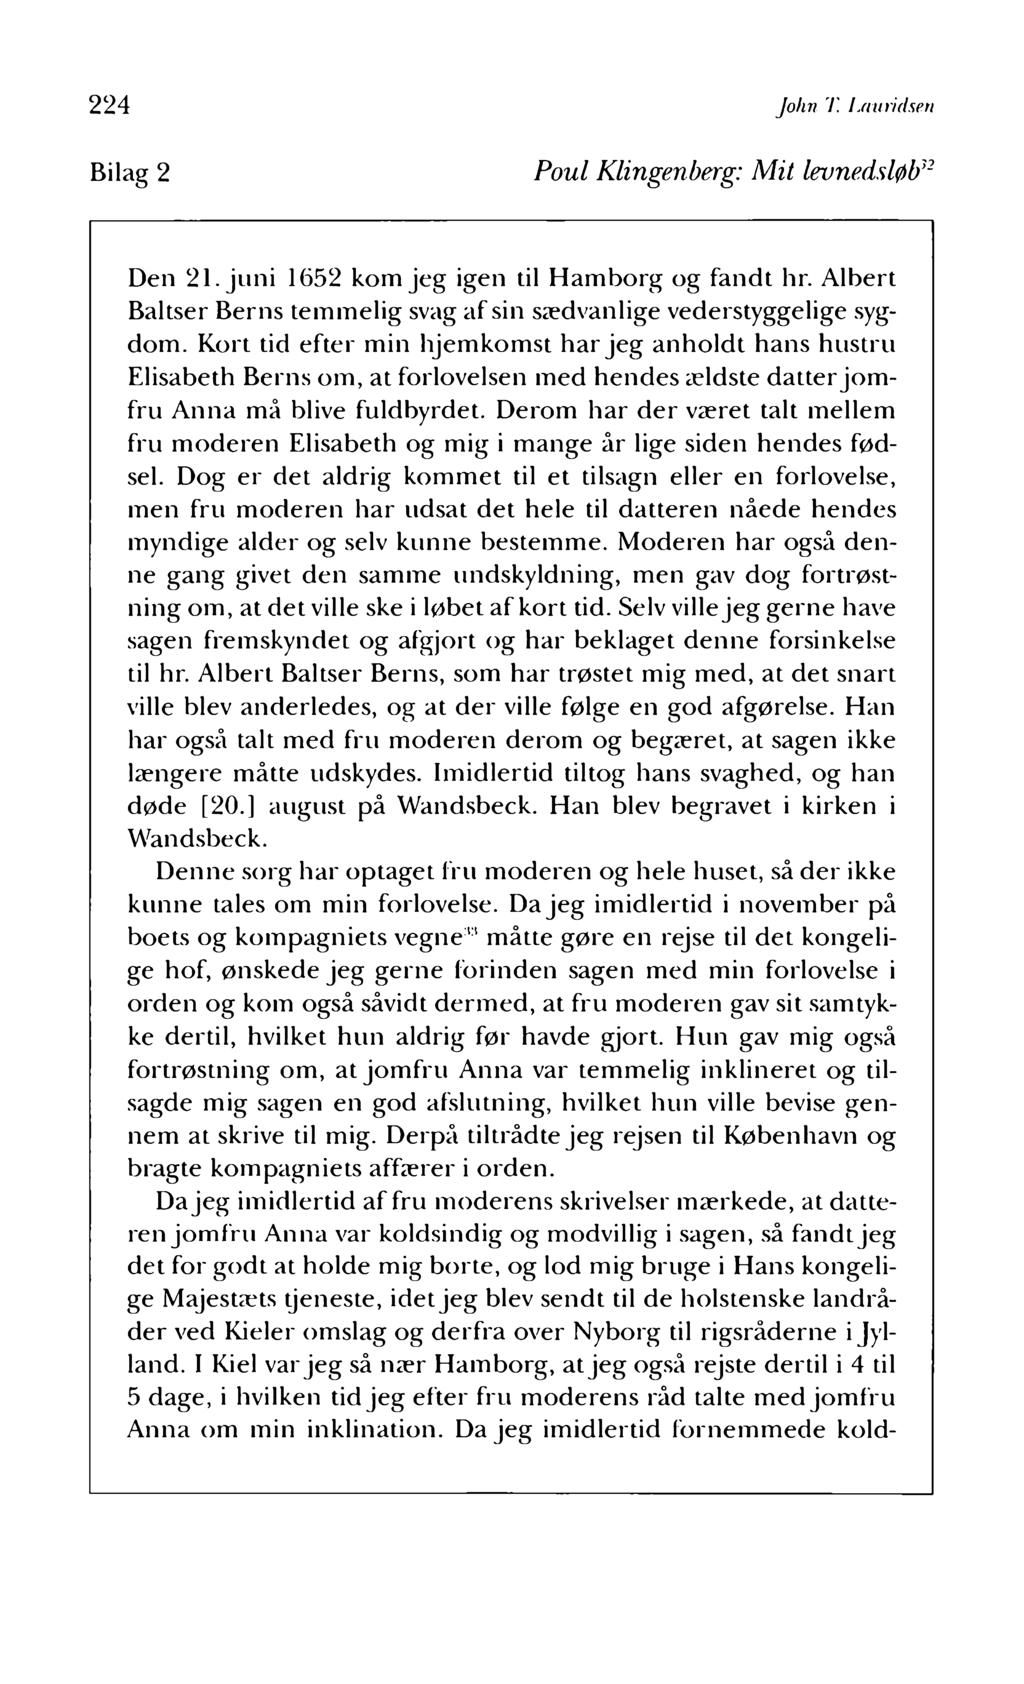 224 Bilag 2 John T. Lauridsen Poul Klingenberg: Mit levnedsløb32 Den 21. juni 1652 kom jeg igen til Hamborg og fandt hr. Albert Bakser Berns temmelig svag af sin sædvanlige vederstyggelige sygdom.